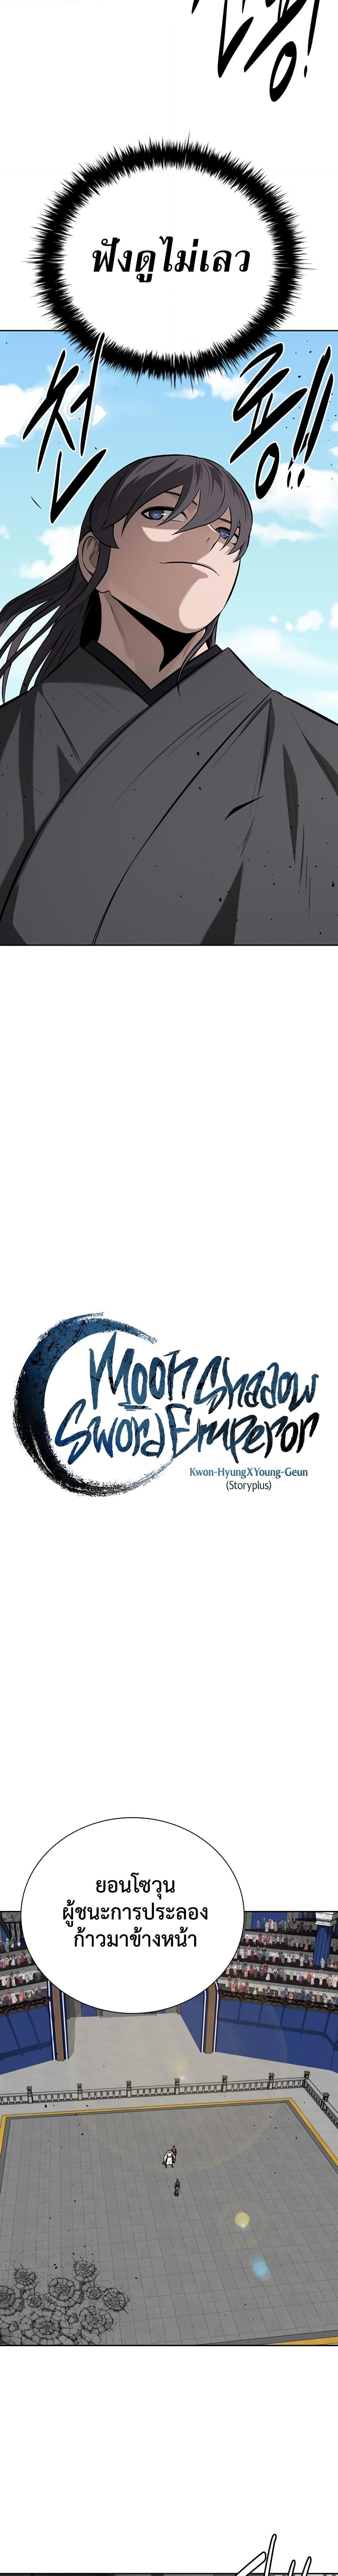 Moon Shadow Sword Emperor 84 08